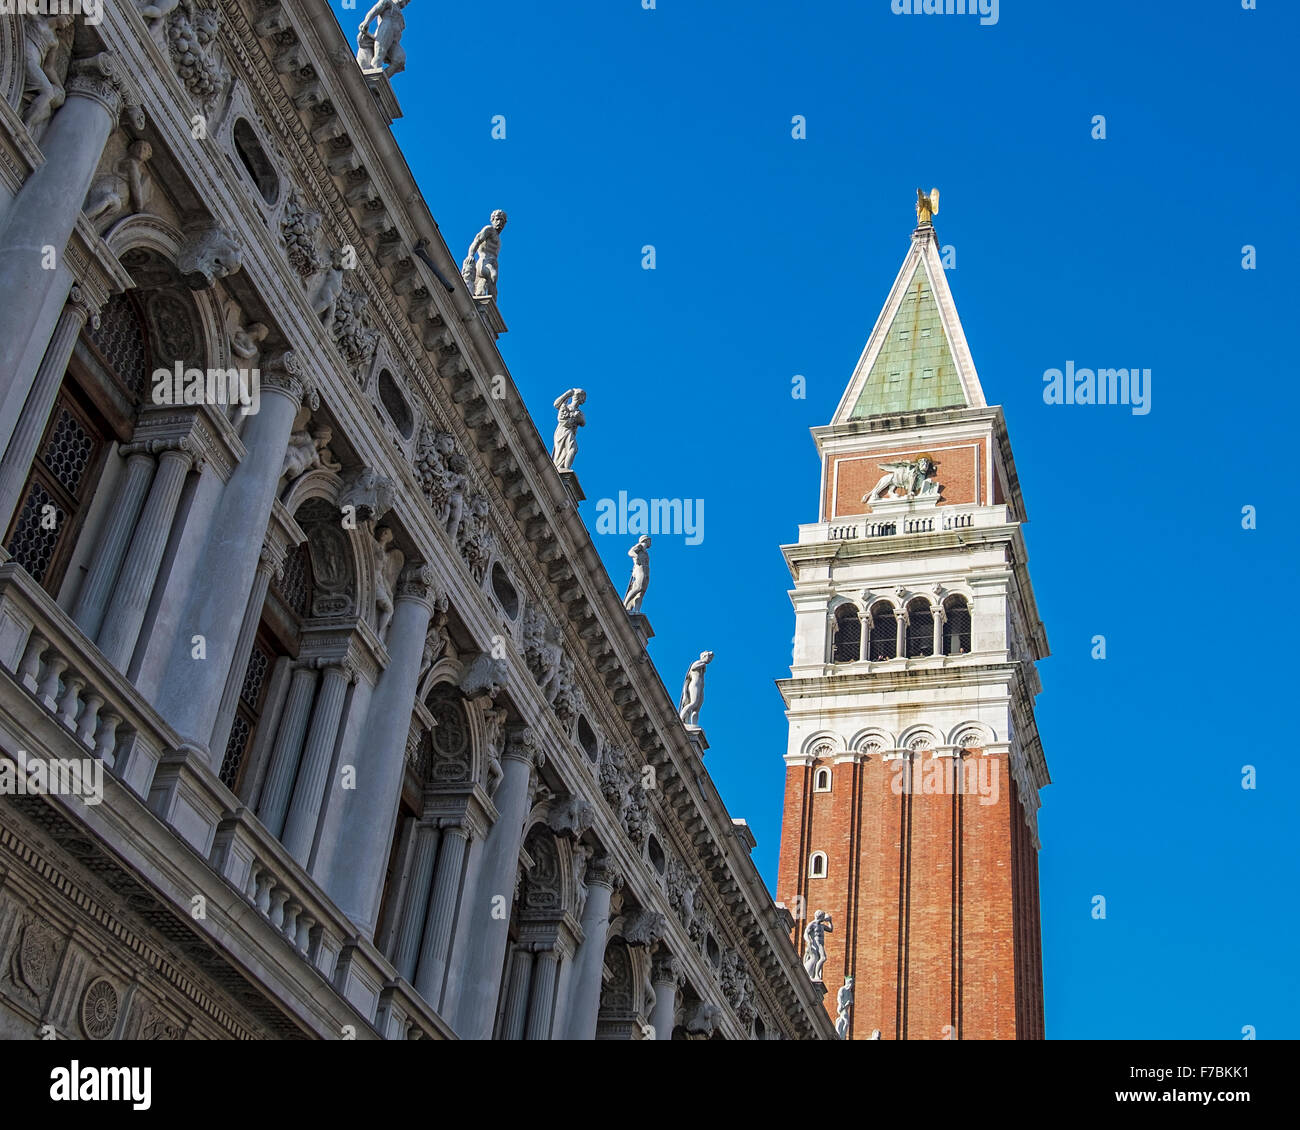 Venecia, Italia. Biblioteca Nazionale Marciana, la fachada de la Biblioteca Nacional y el Campanile de San Marcos con el cielo azul Foto de stock